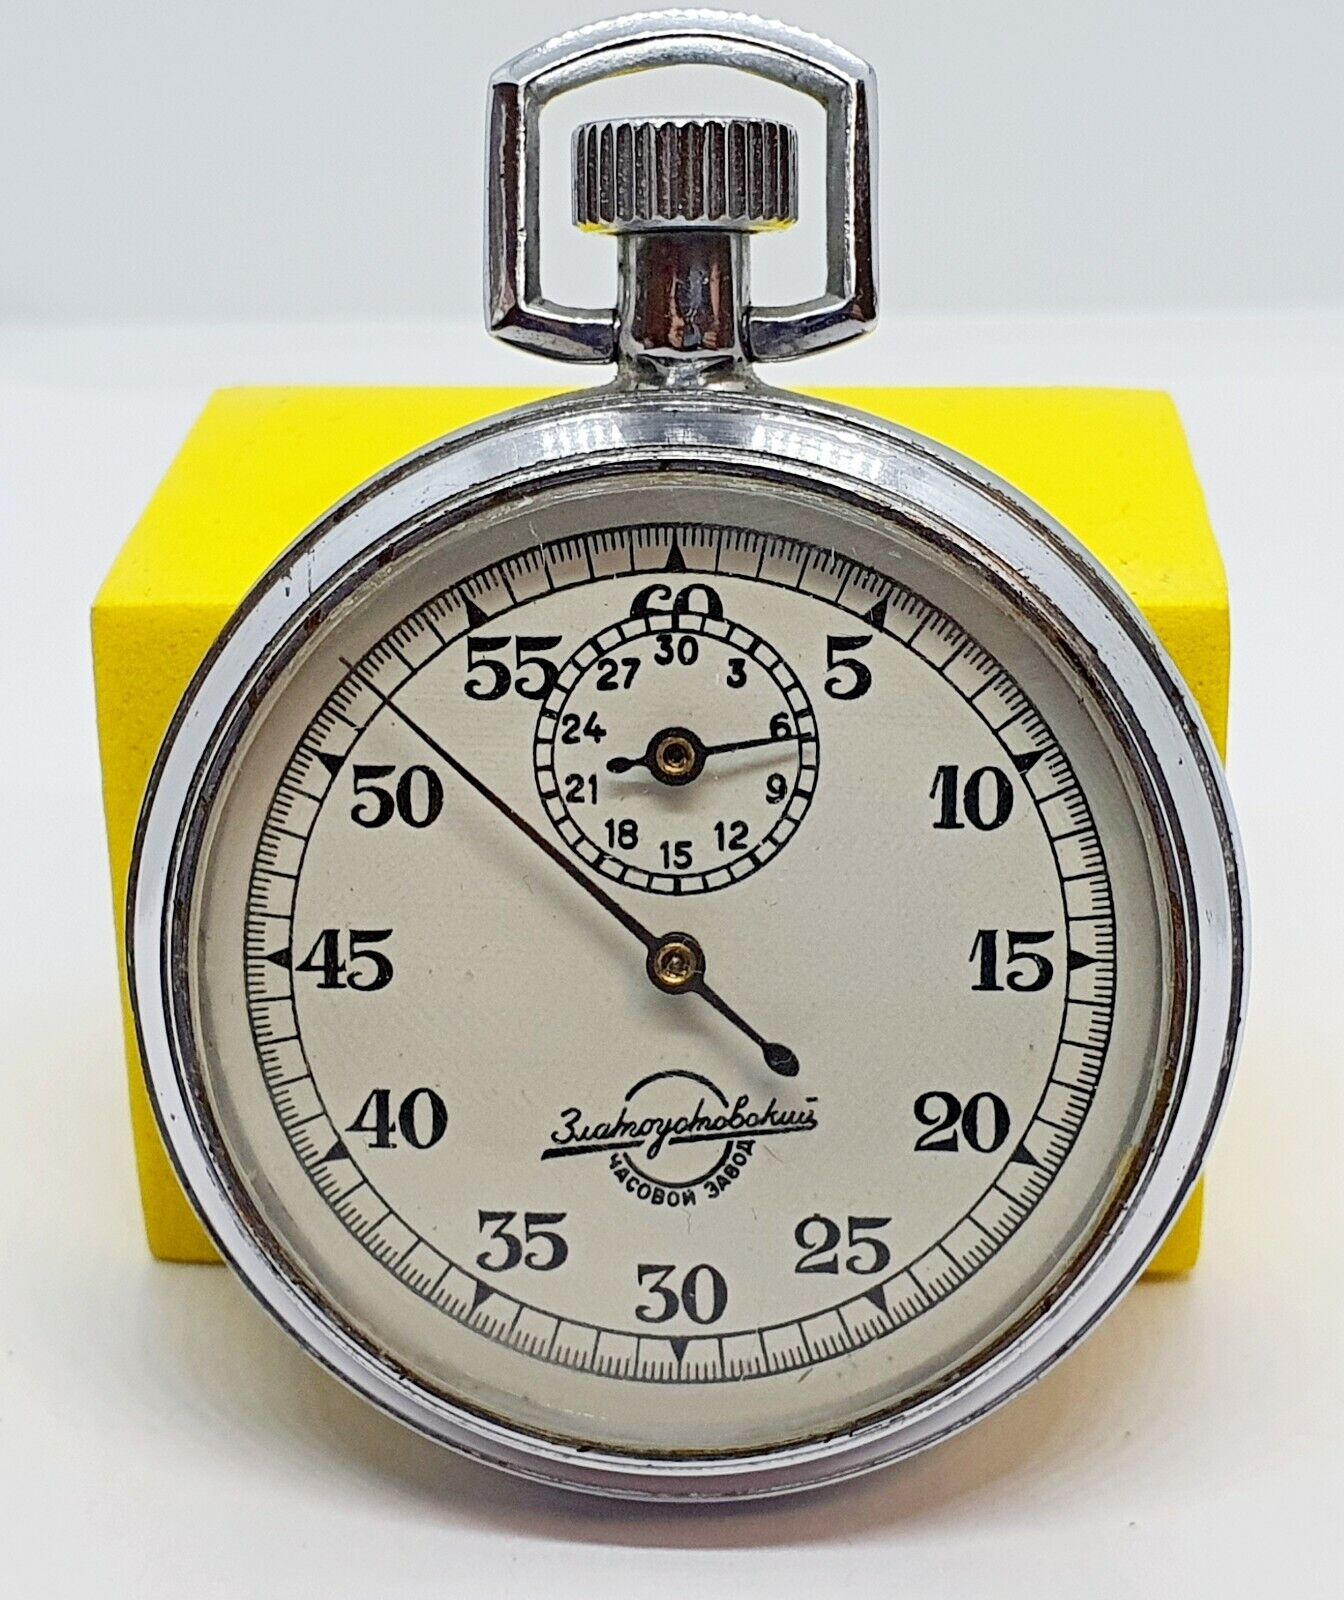 Stopwatch Zlatoust ZChZ watch 11 jewels, 1957 Rare Russia Pocket watch